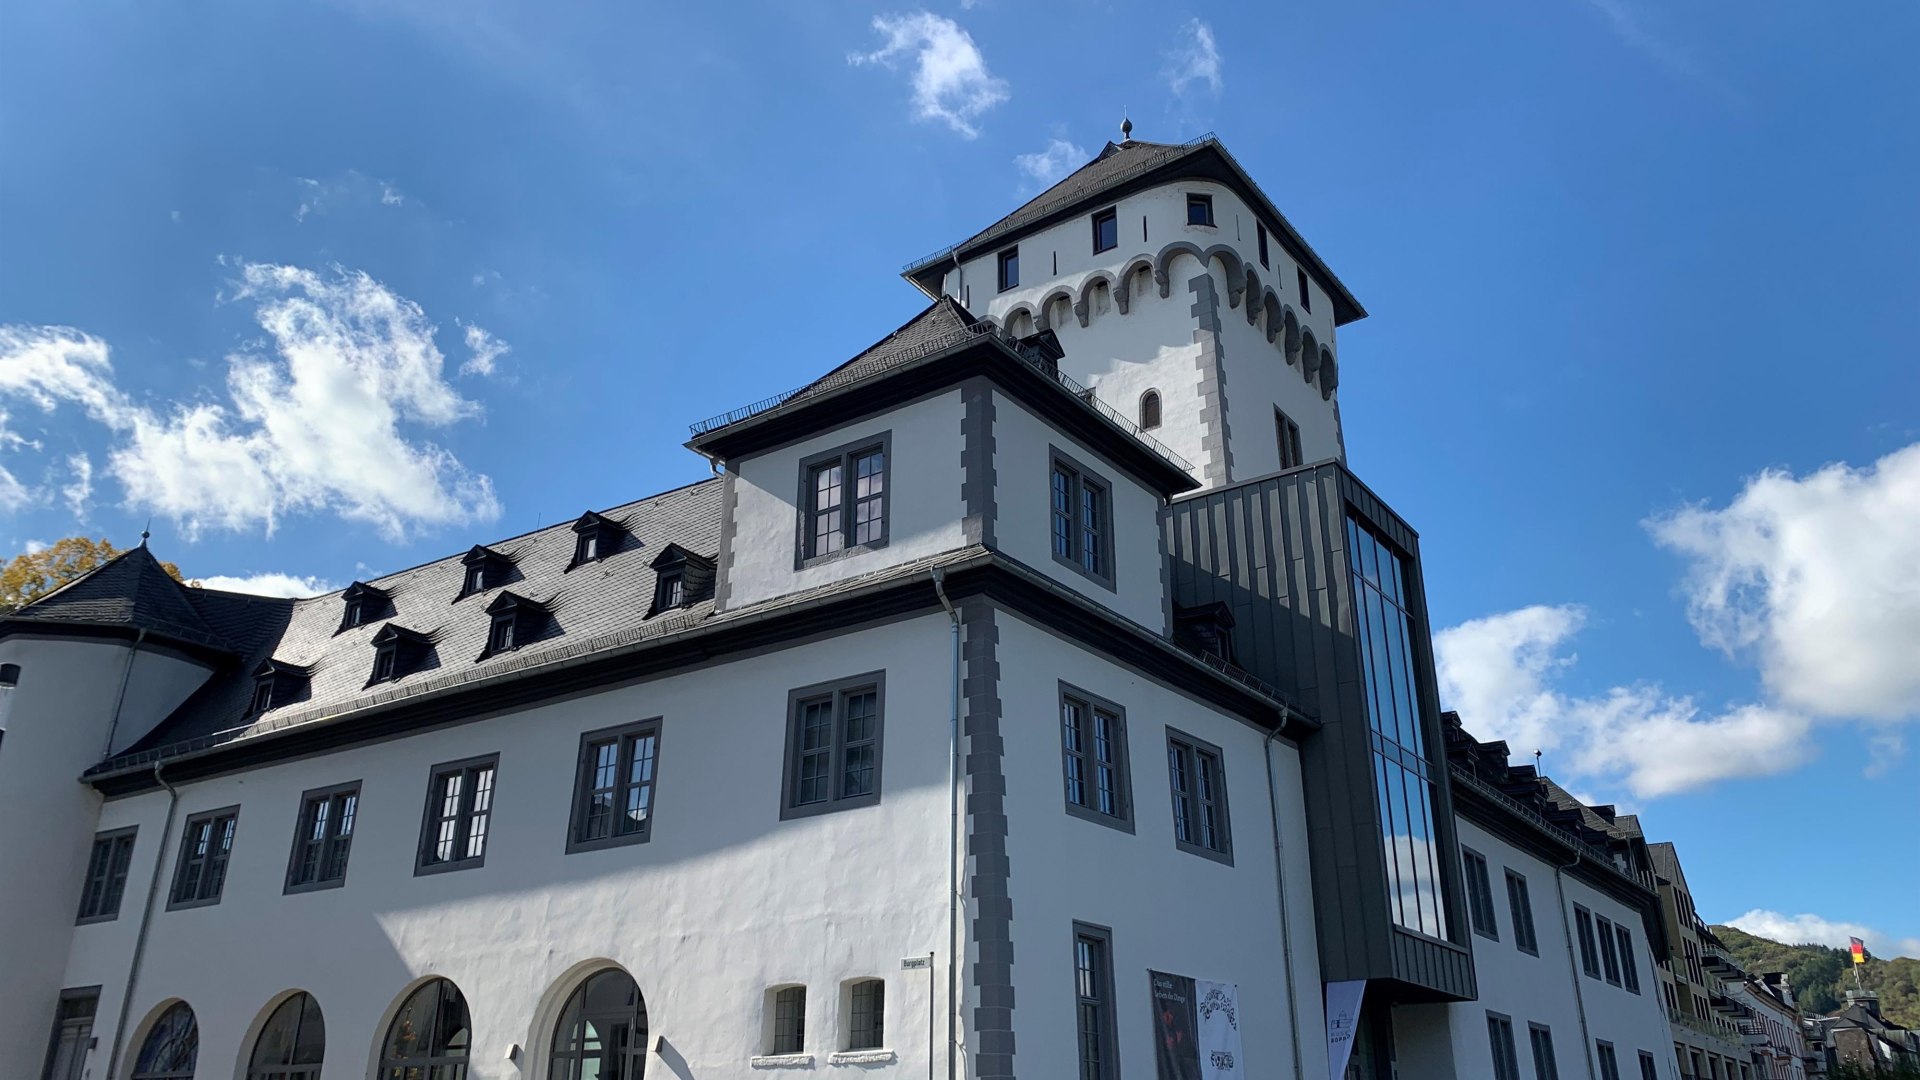 Kurfürstliche Burg Seite | © Tourist Information Boppard